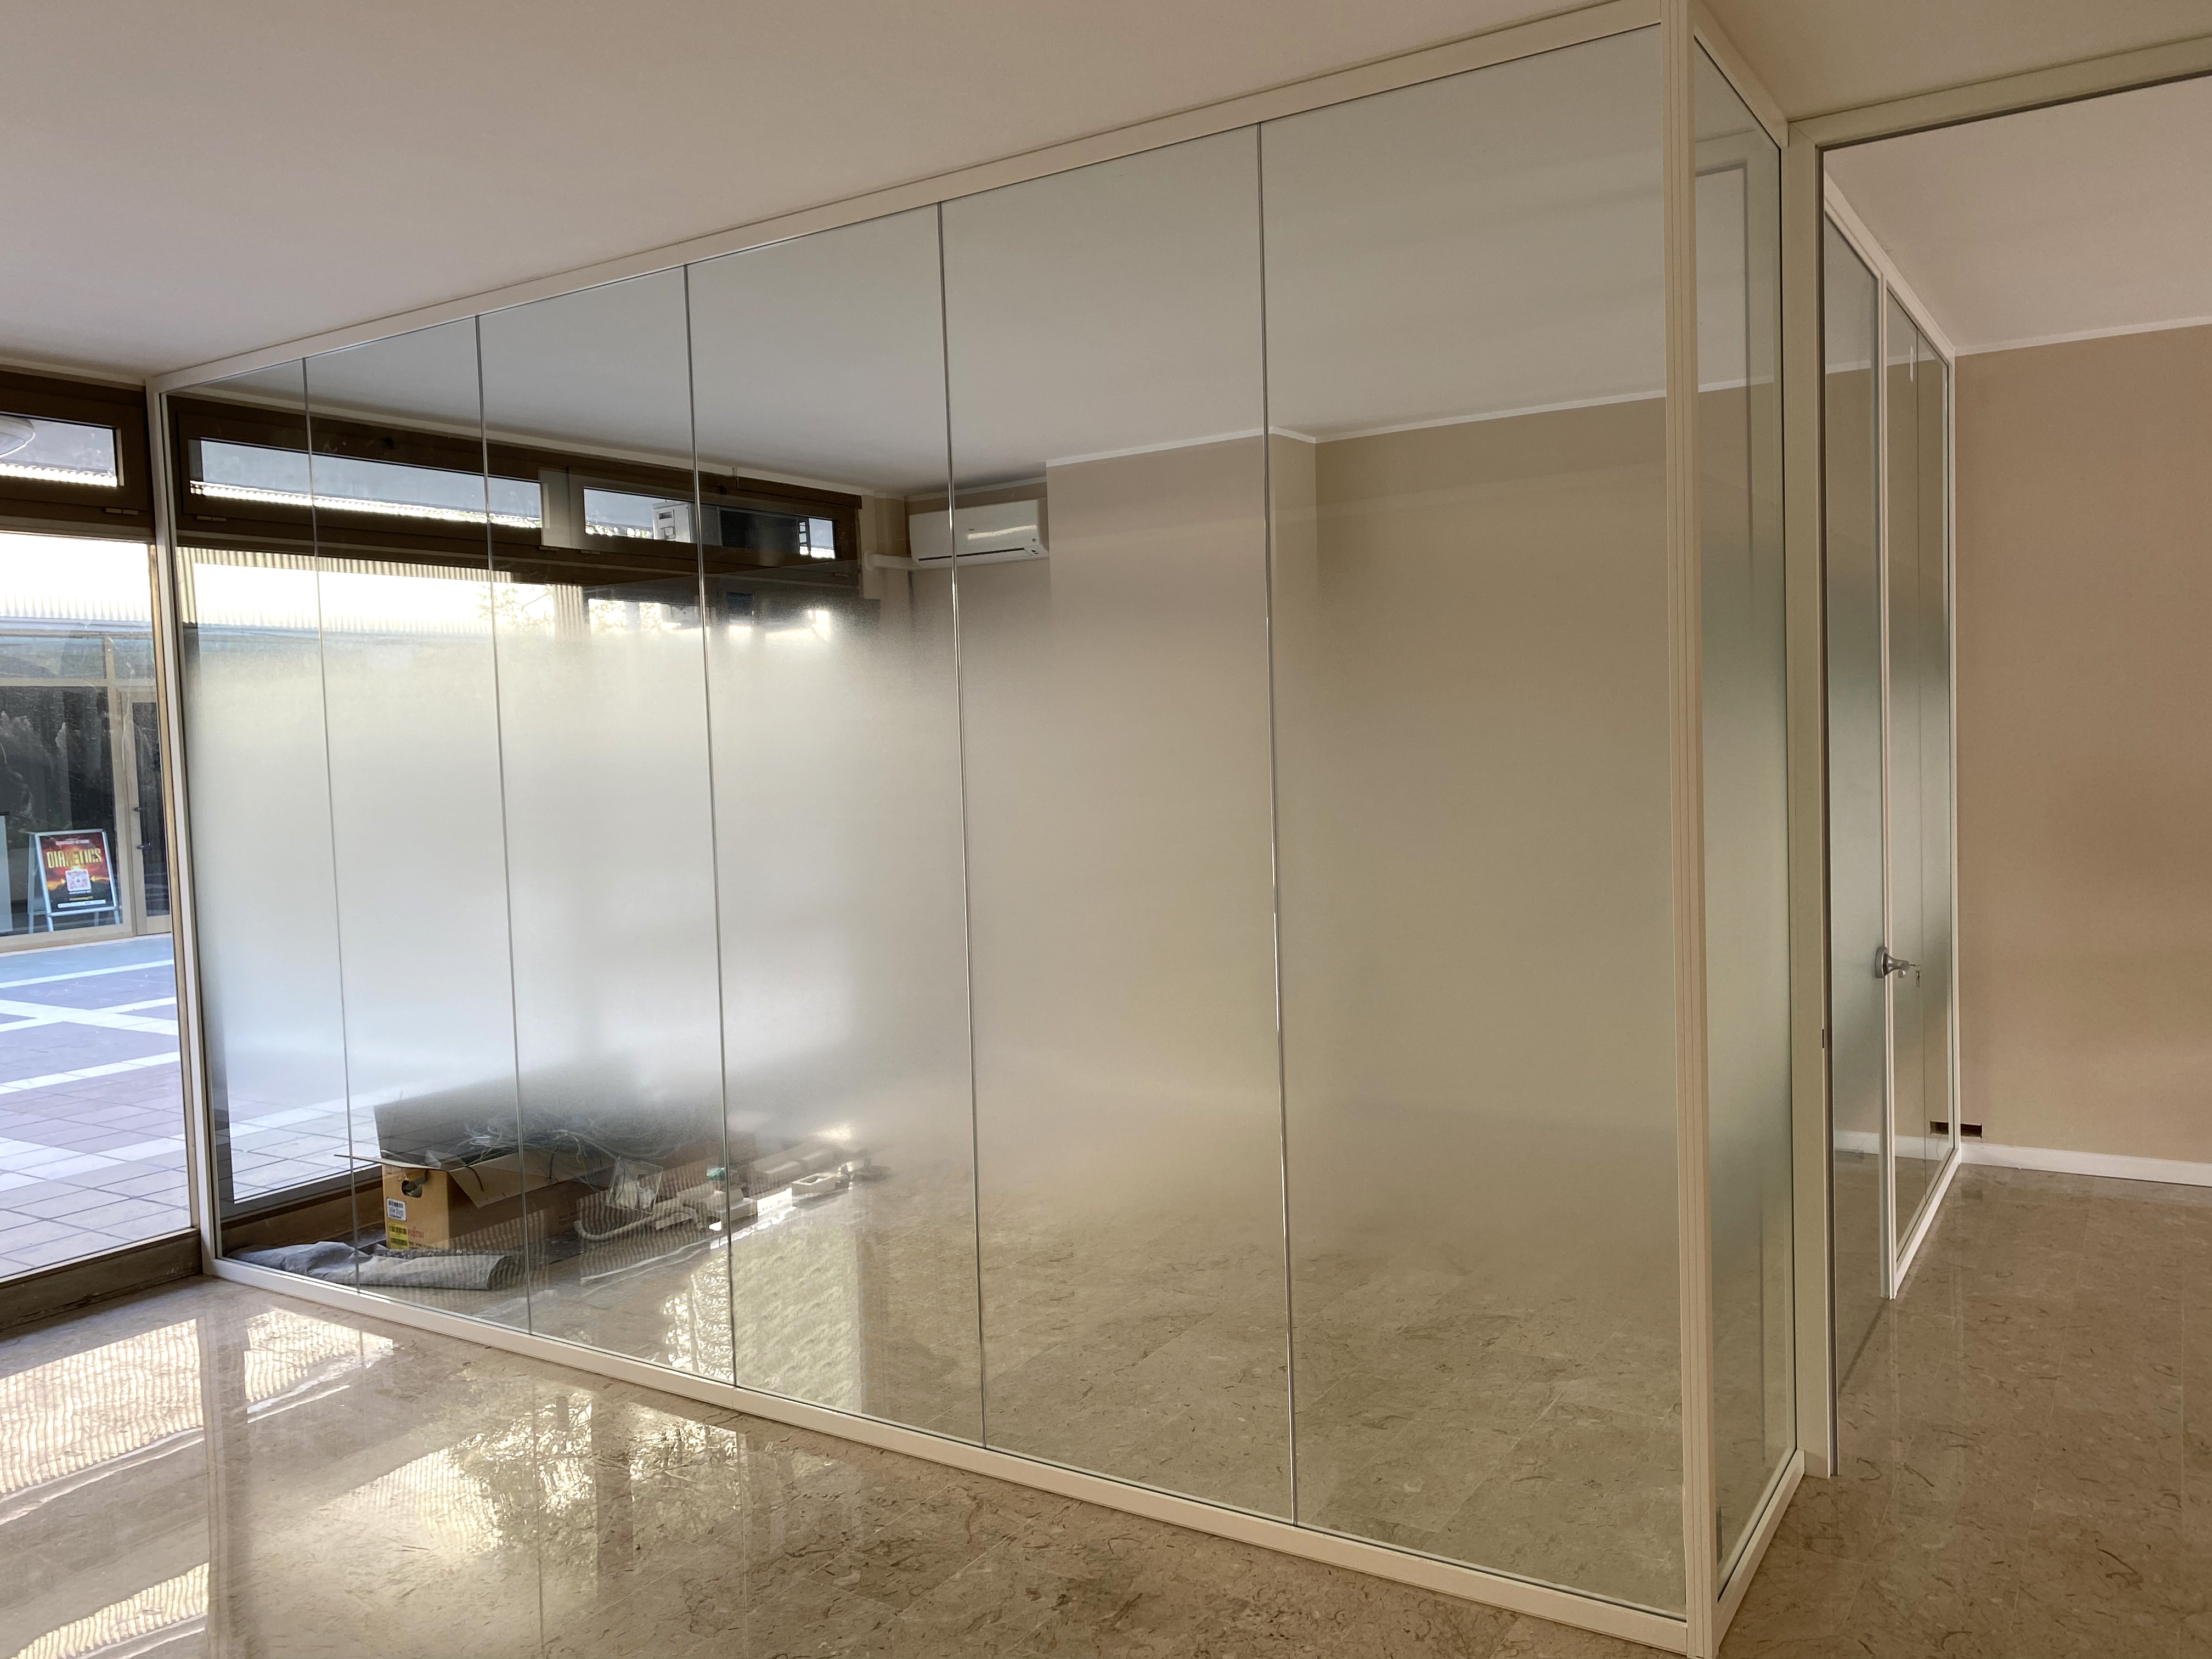 Zu sehen ist ein Büro mit einem verglasten Meeting-Raum, der durch eine Milchglasfolie teilweise vor Blicken geschützt wird.